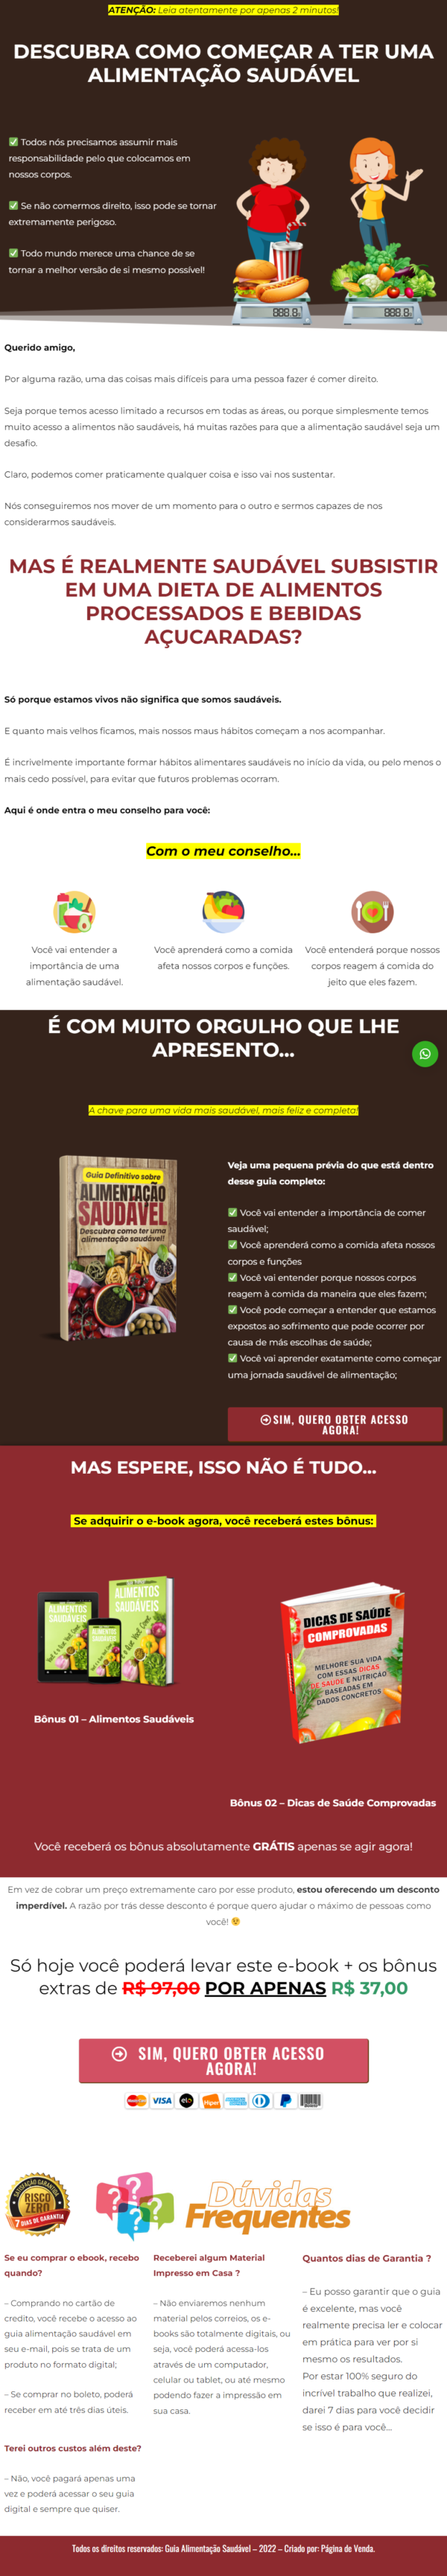 pagina de venda ebook plr alimentacao saudavel